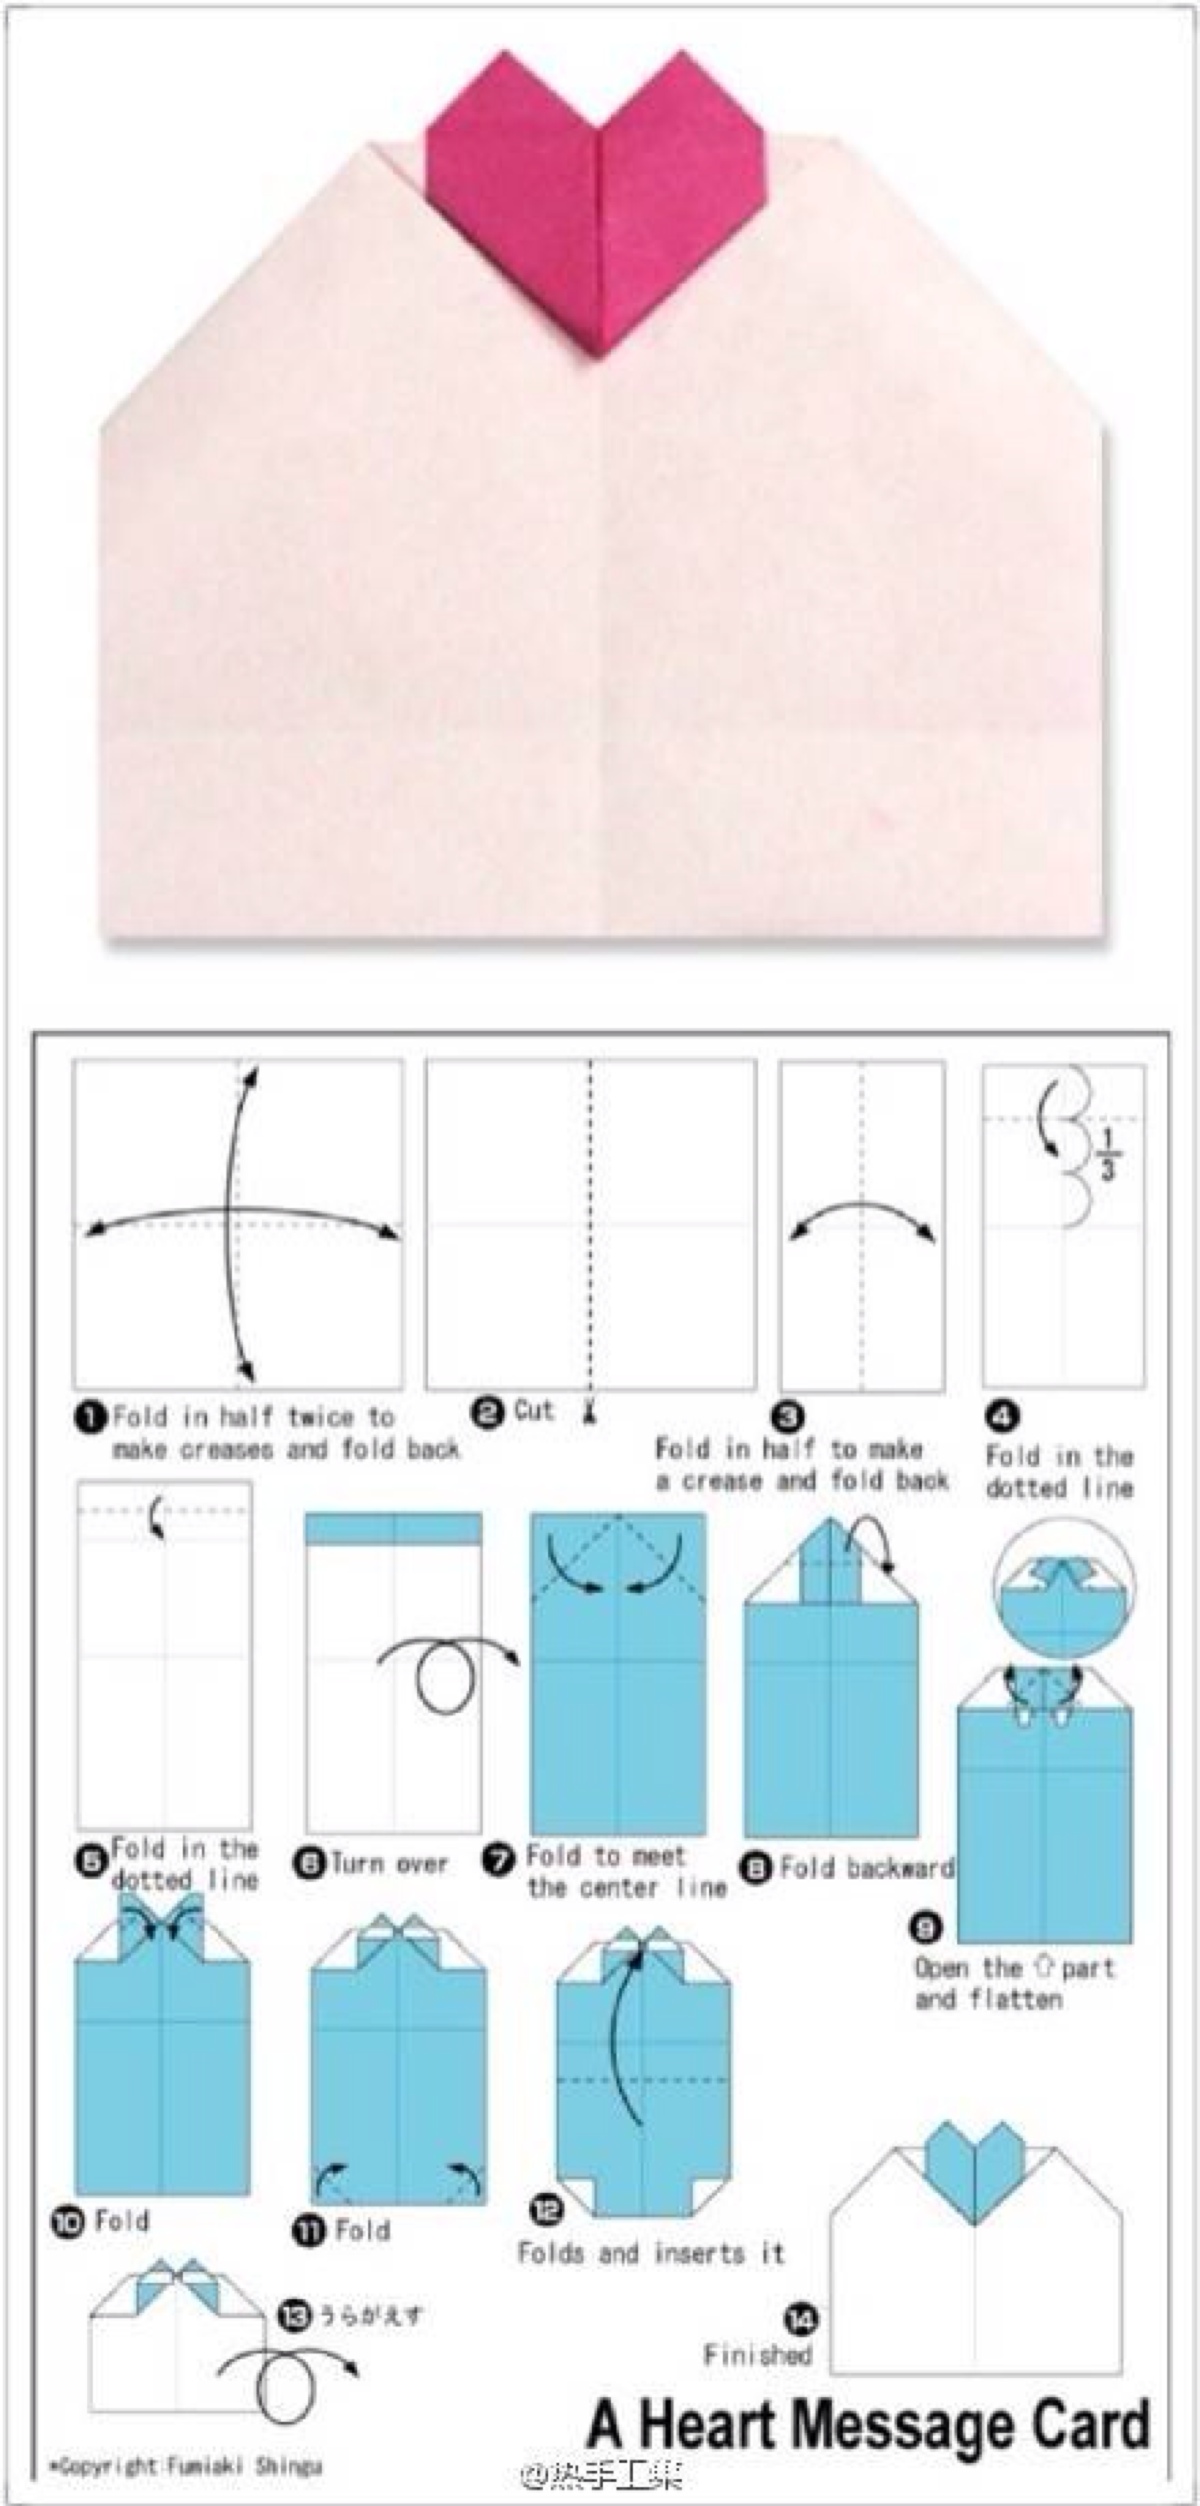 信封怎么做 手工 步骤图片